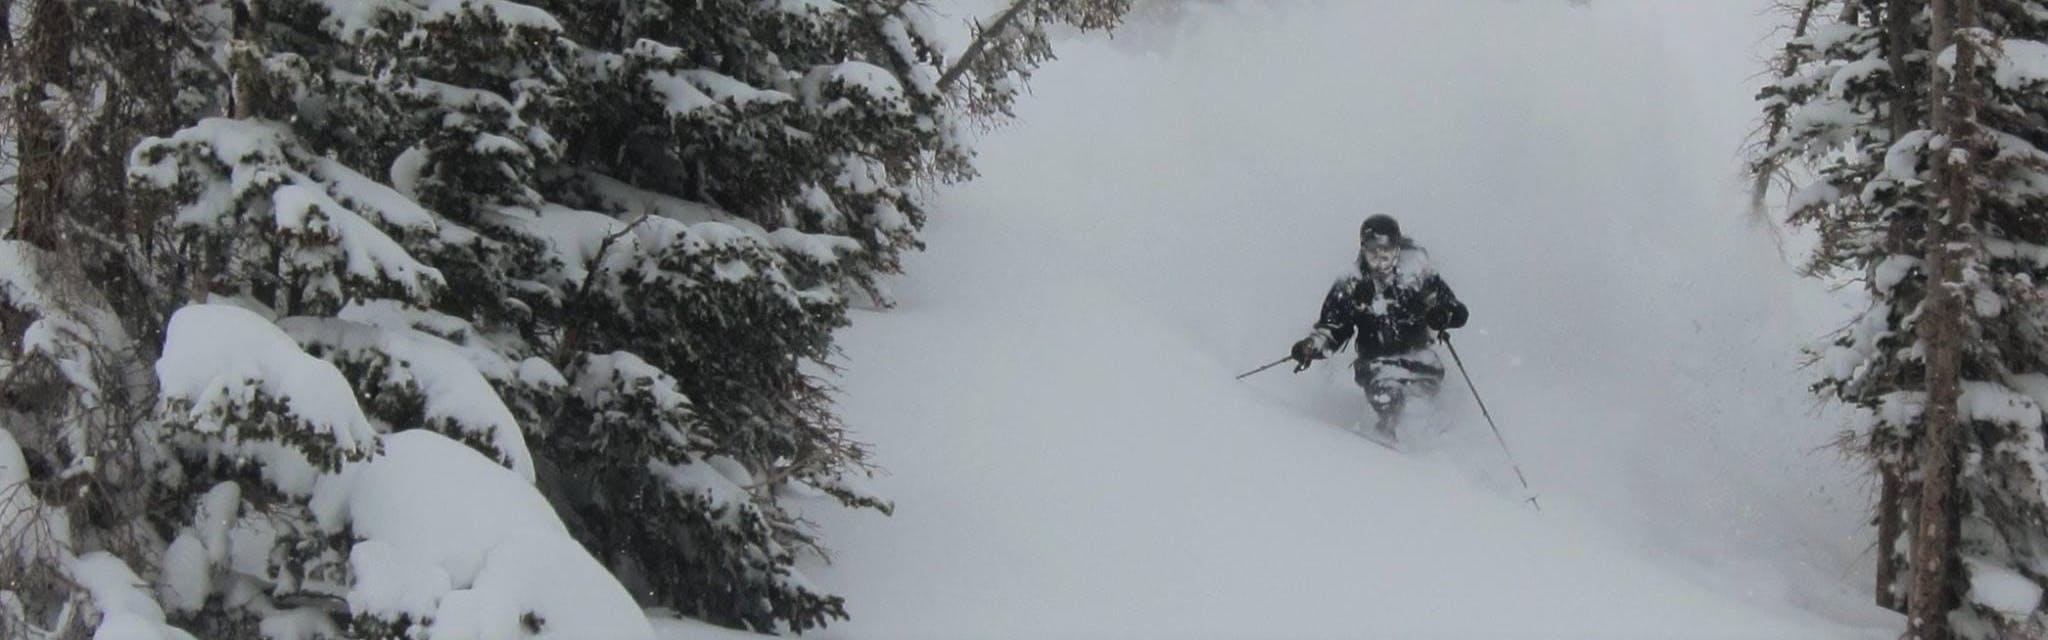 A skier turning in deep powder. 